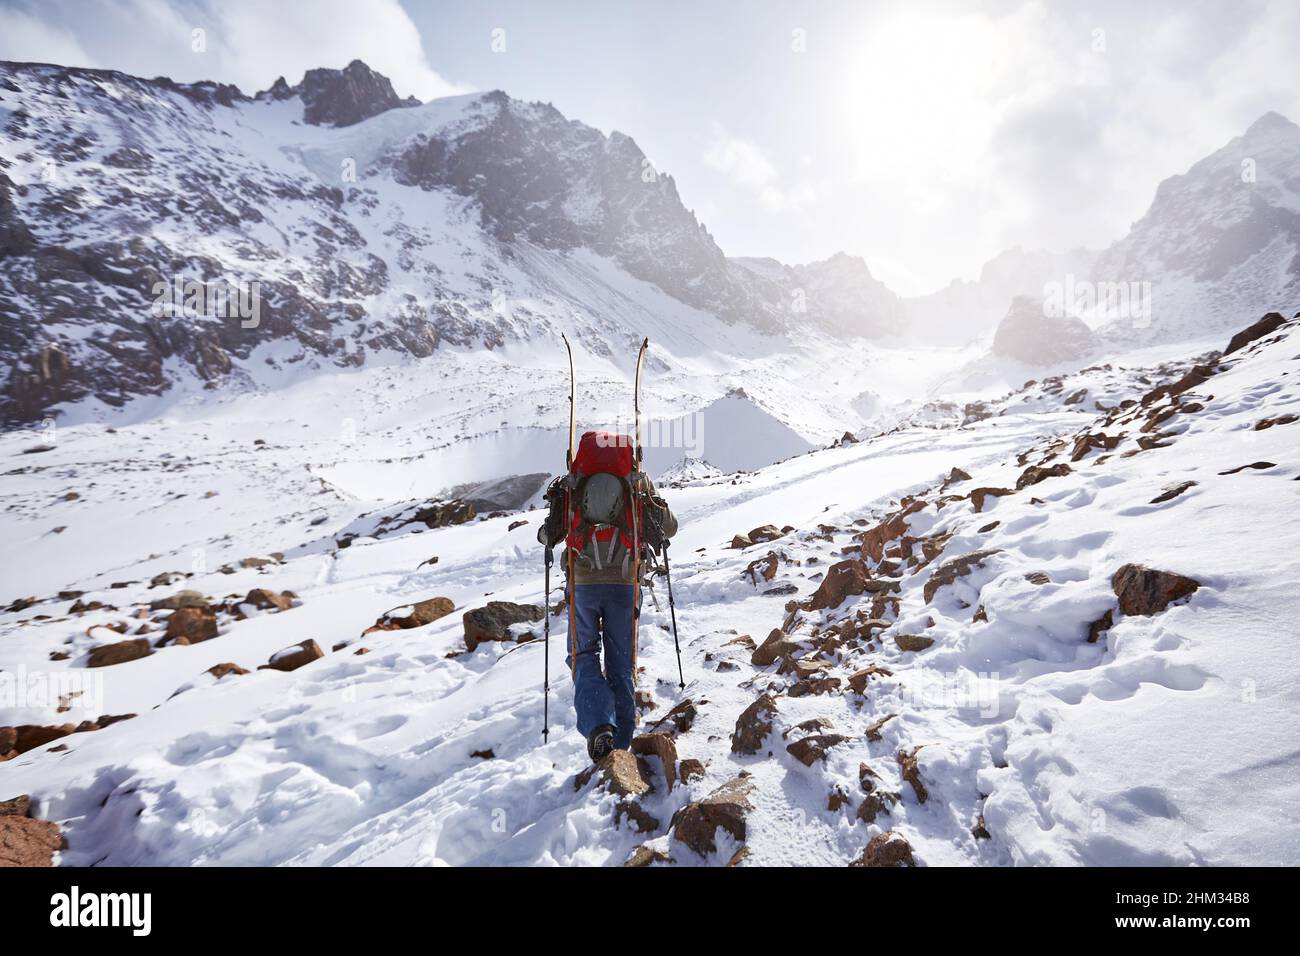 Skieur grimpant en planche partagée dans les hautes montagnes enneigées. Sport en plein air en hiver. Banque D'Images